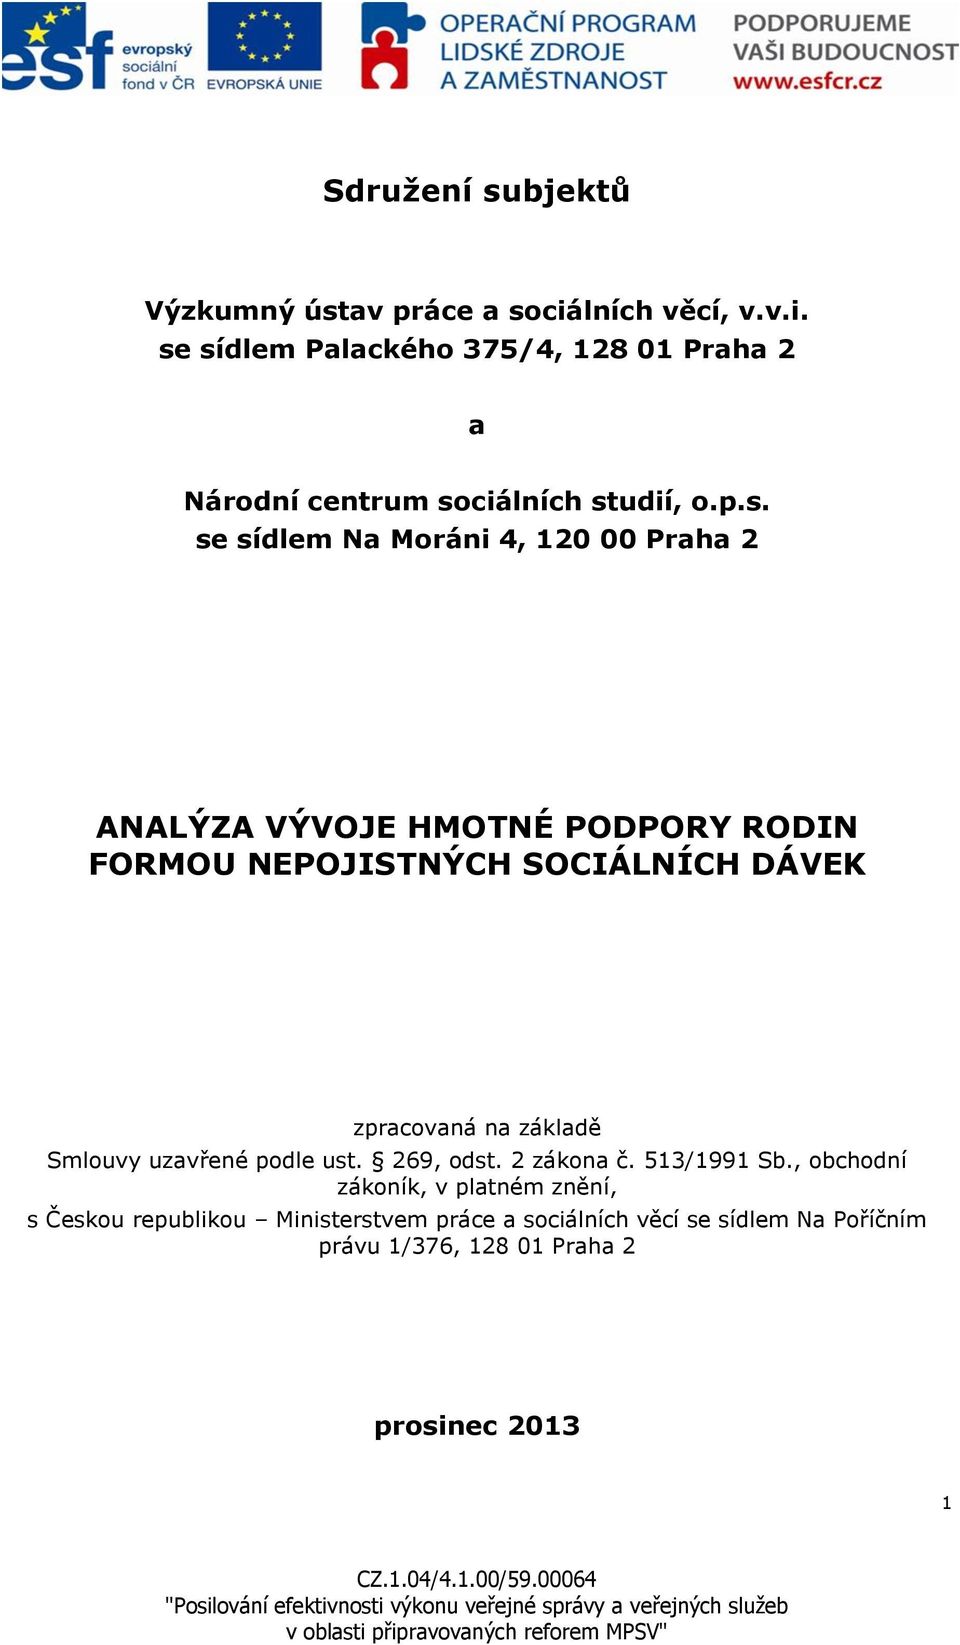 sídlem Palackého 375/4, 128 01 Praha 2 a Národní centrum sociálních studií, o.p.s. se sídlem Na Moráni 4, 120 00 Praha 2